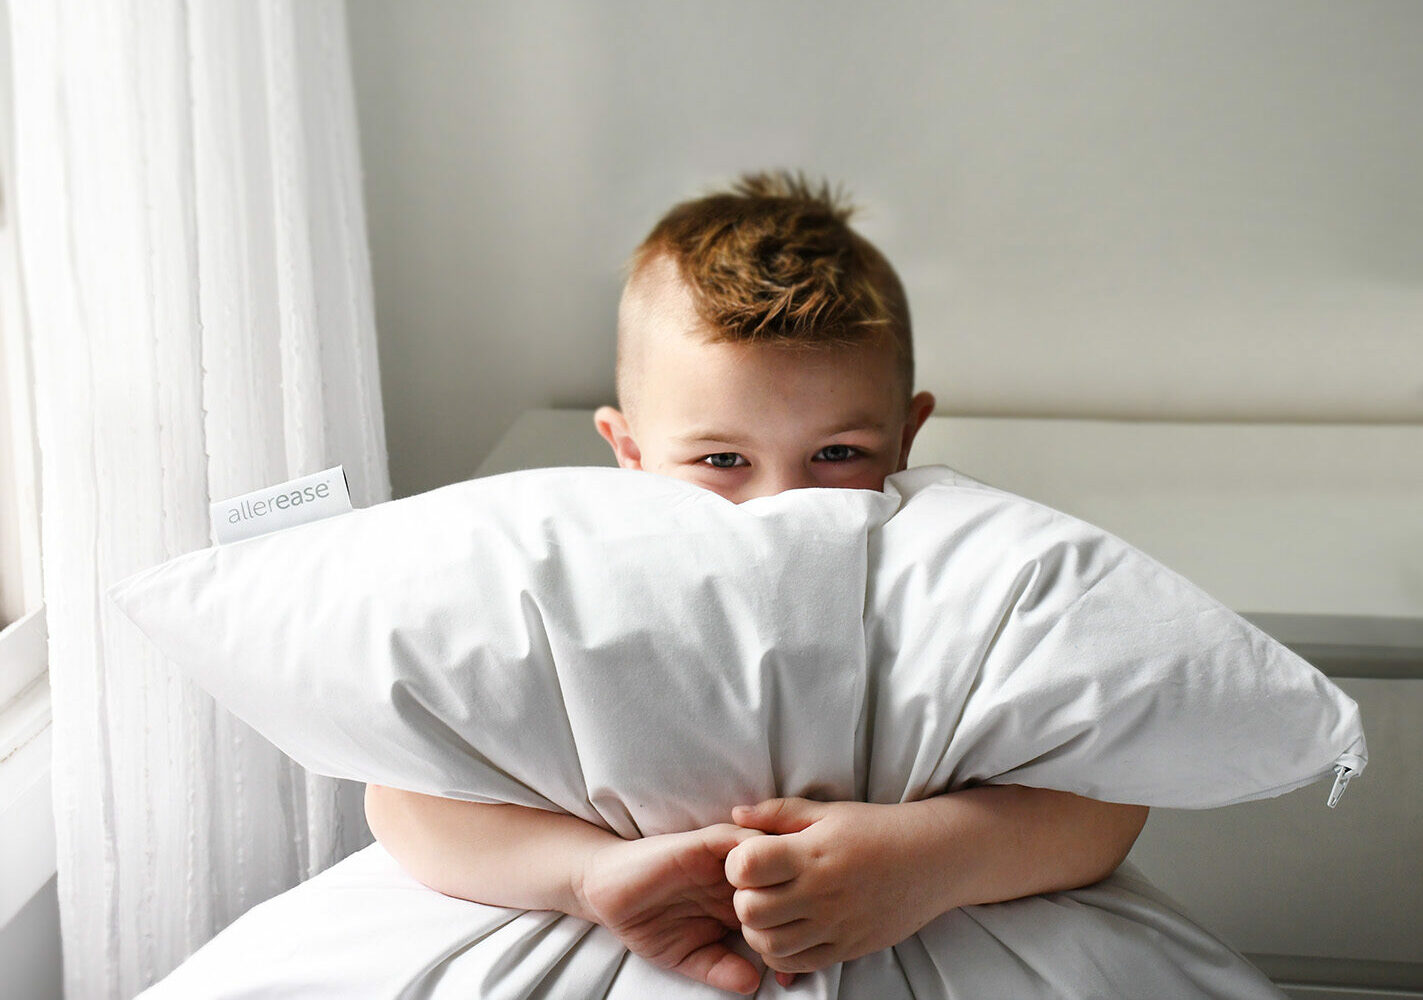 A little boy hugging a pillow.